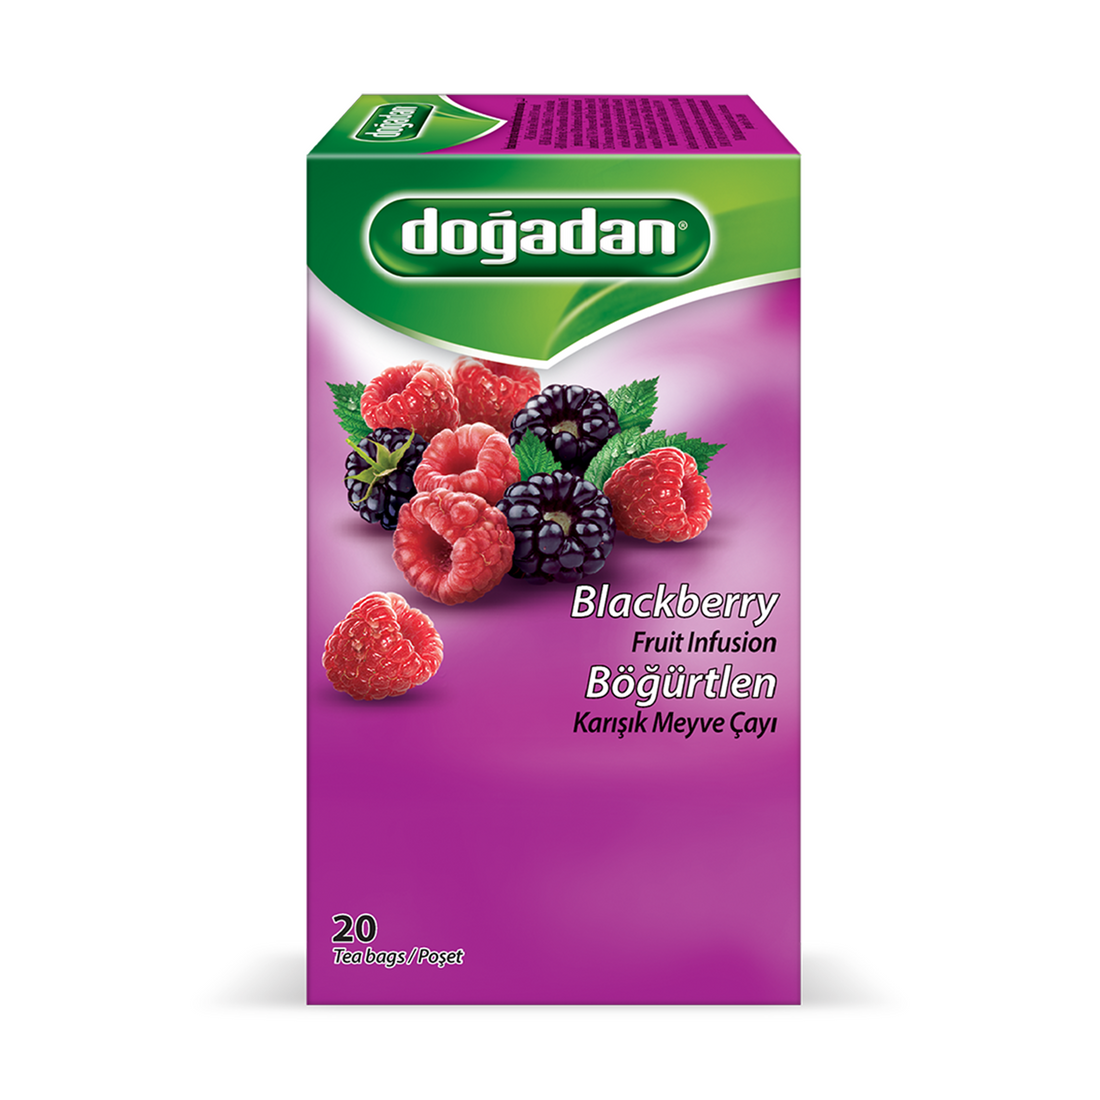 Dogadan Blackberry Mixed Fruit Tea 2g×20P | Dogadan Bogurtlen Karisik Meyve Cayi | Blackberry Fruit Infusion